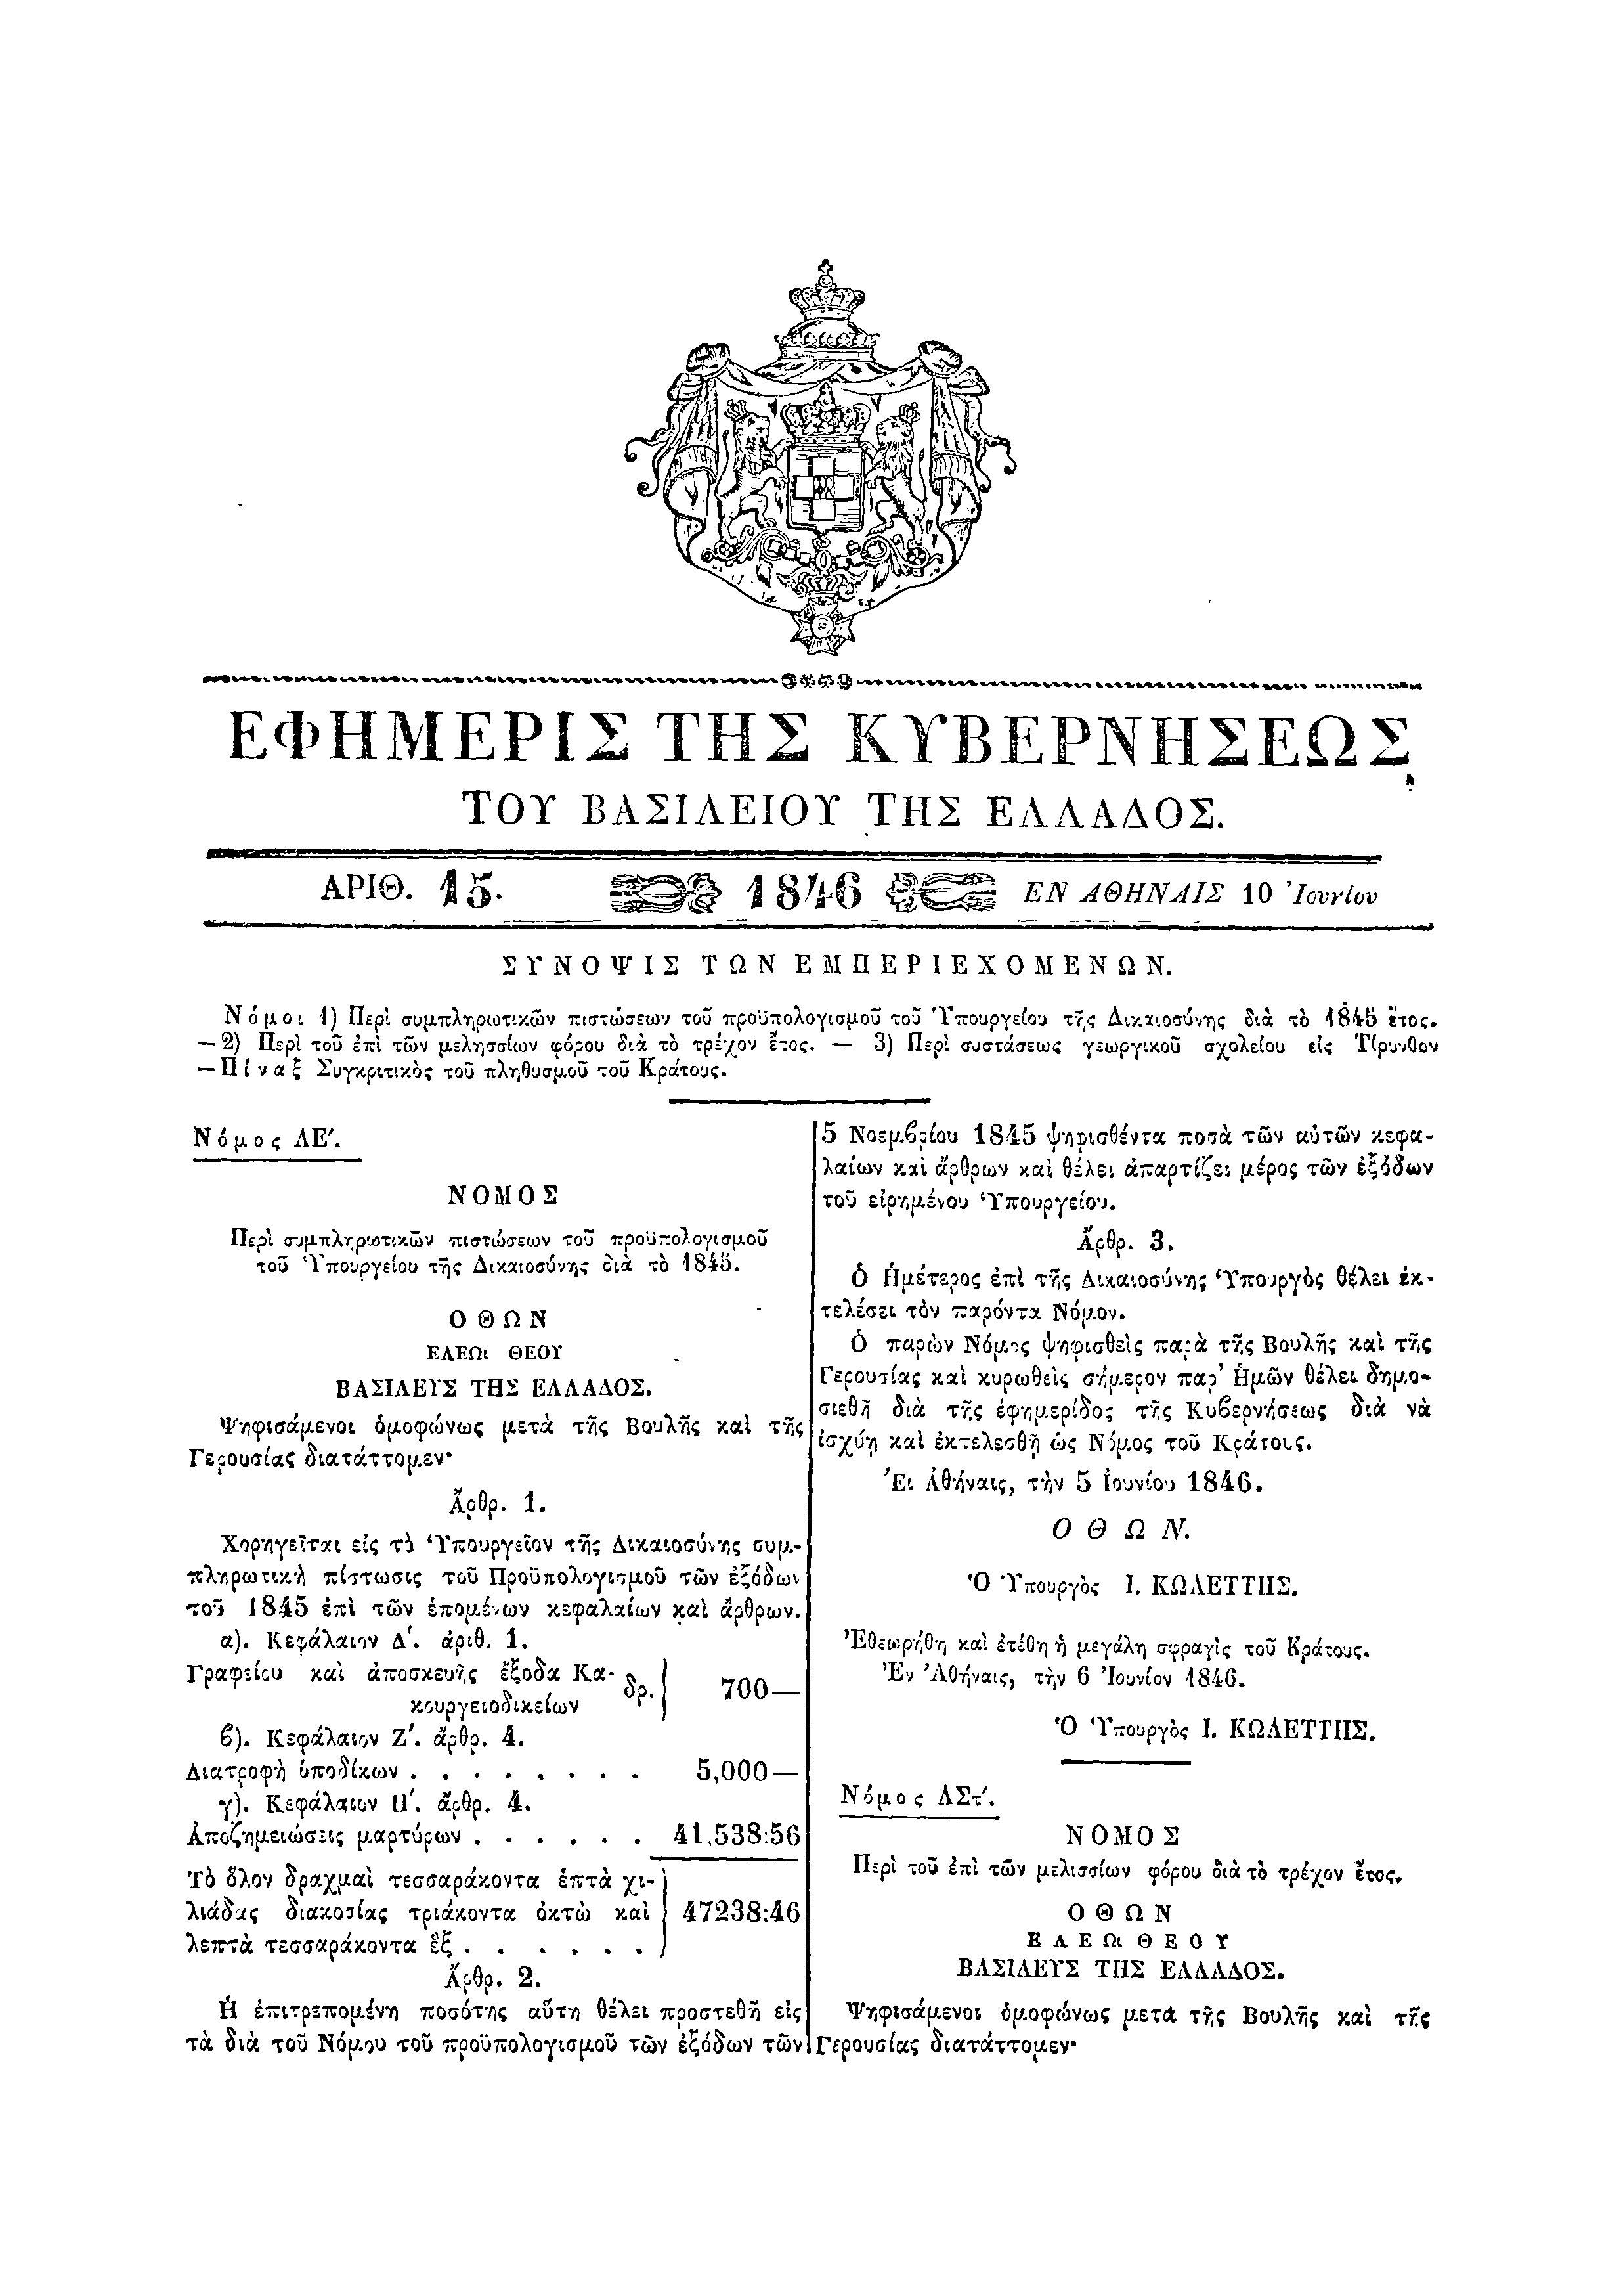 ΦΕΚ 15/10-6-1846, σ. 57.